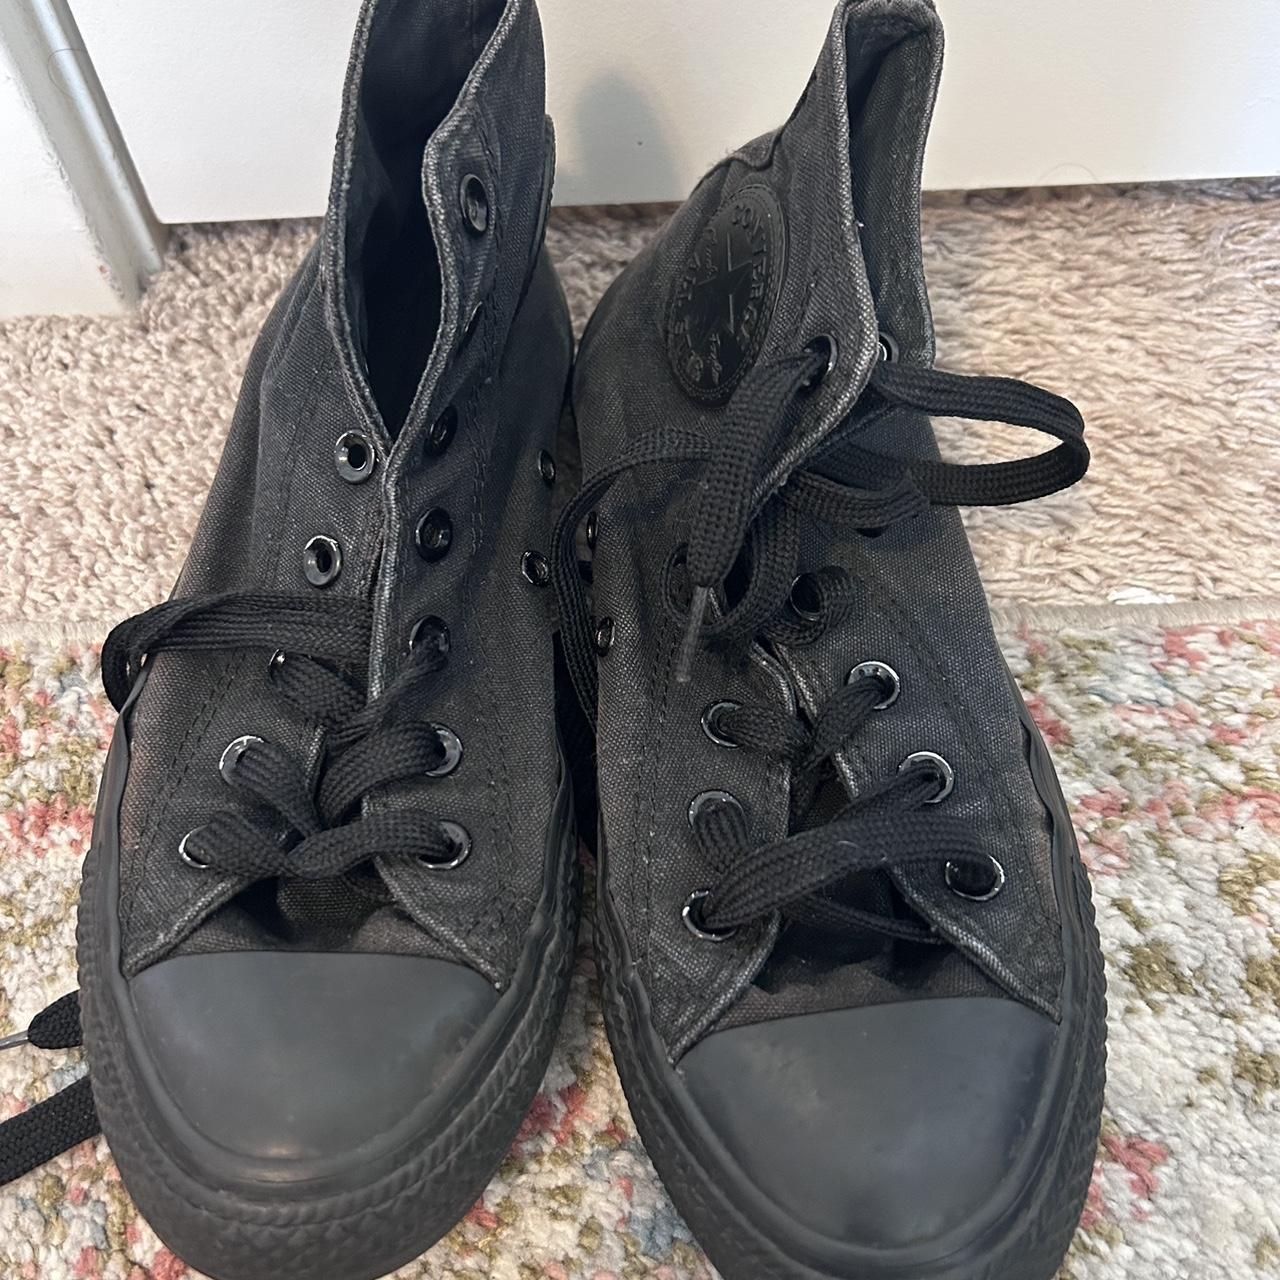 black high top converse black laces size m 6 w 8 - Depop